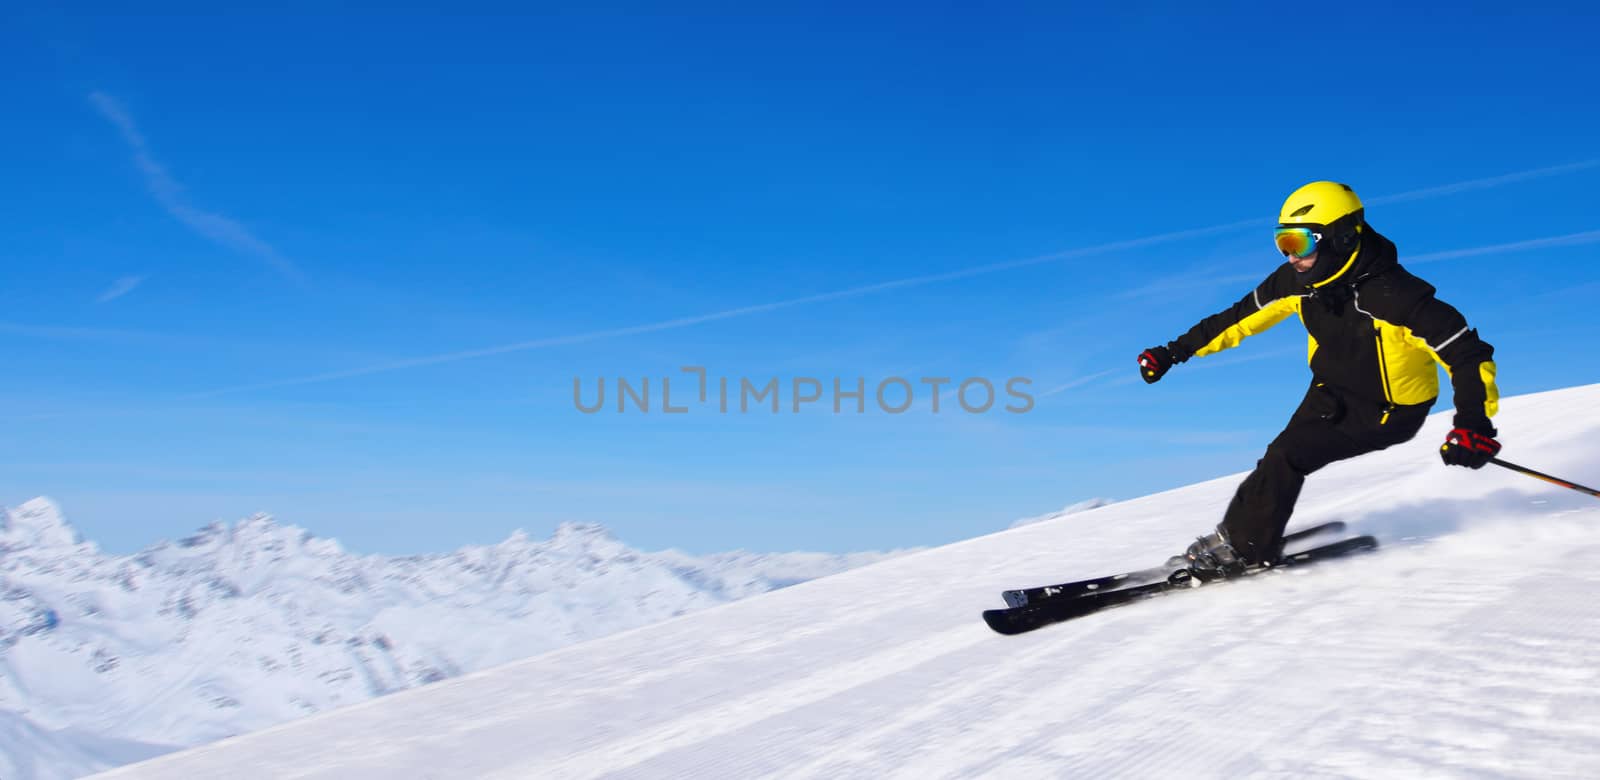 Skier in winter mountains by destillat